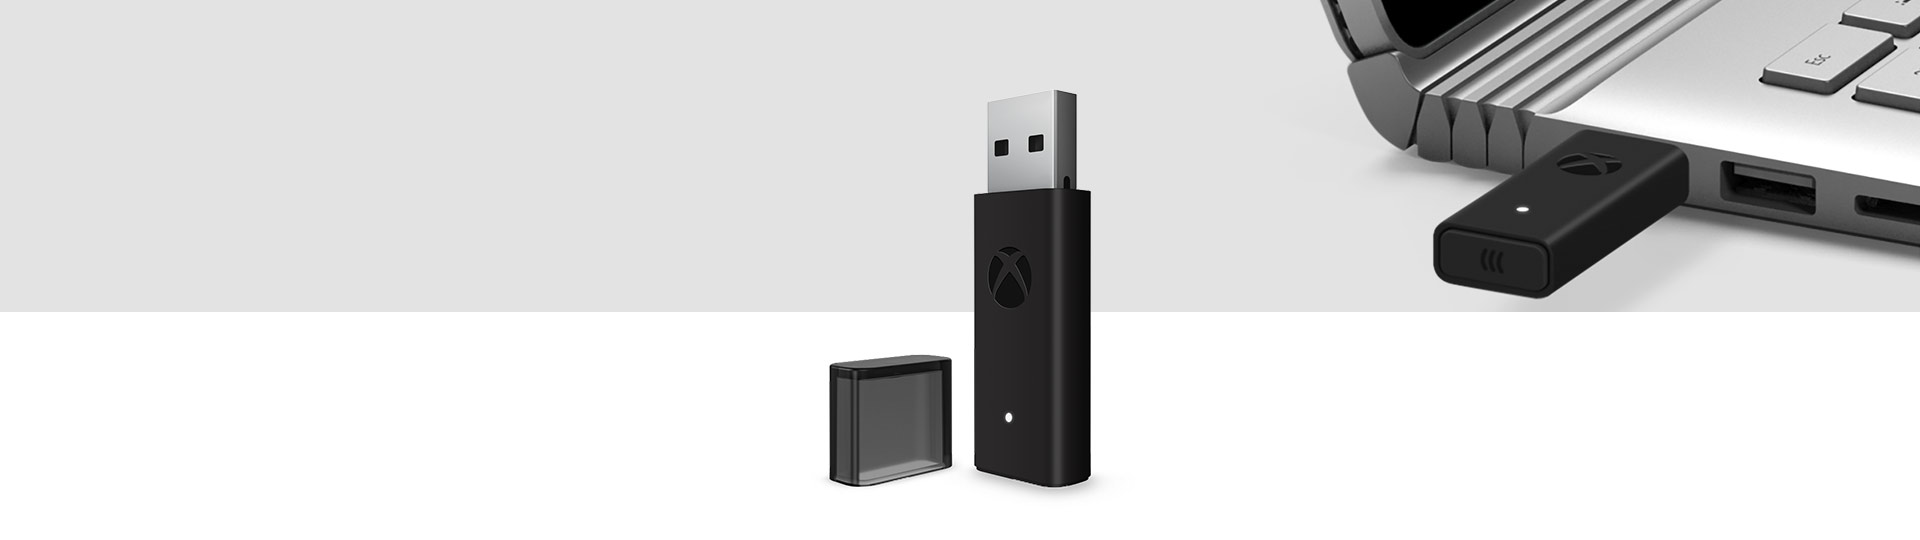 Windows 10 專用的 Xbox 無線控制器配接器，後面有一台插在筆記型電腦 USB 連接埠的 Xbox 無線配接器。